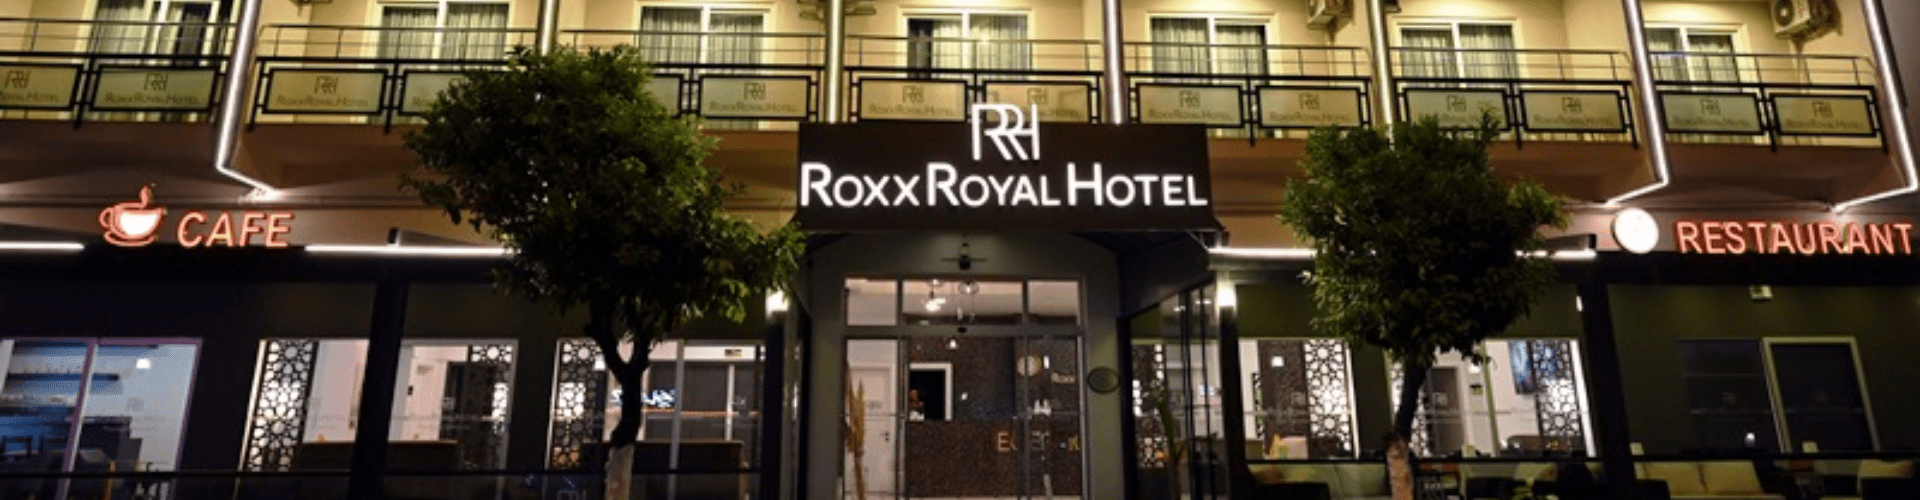 Hotel Roxx Royal - AquaTravel.rs